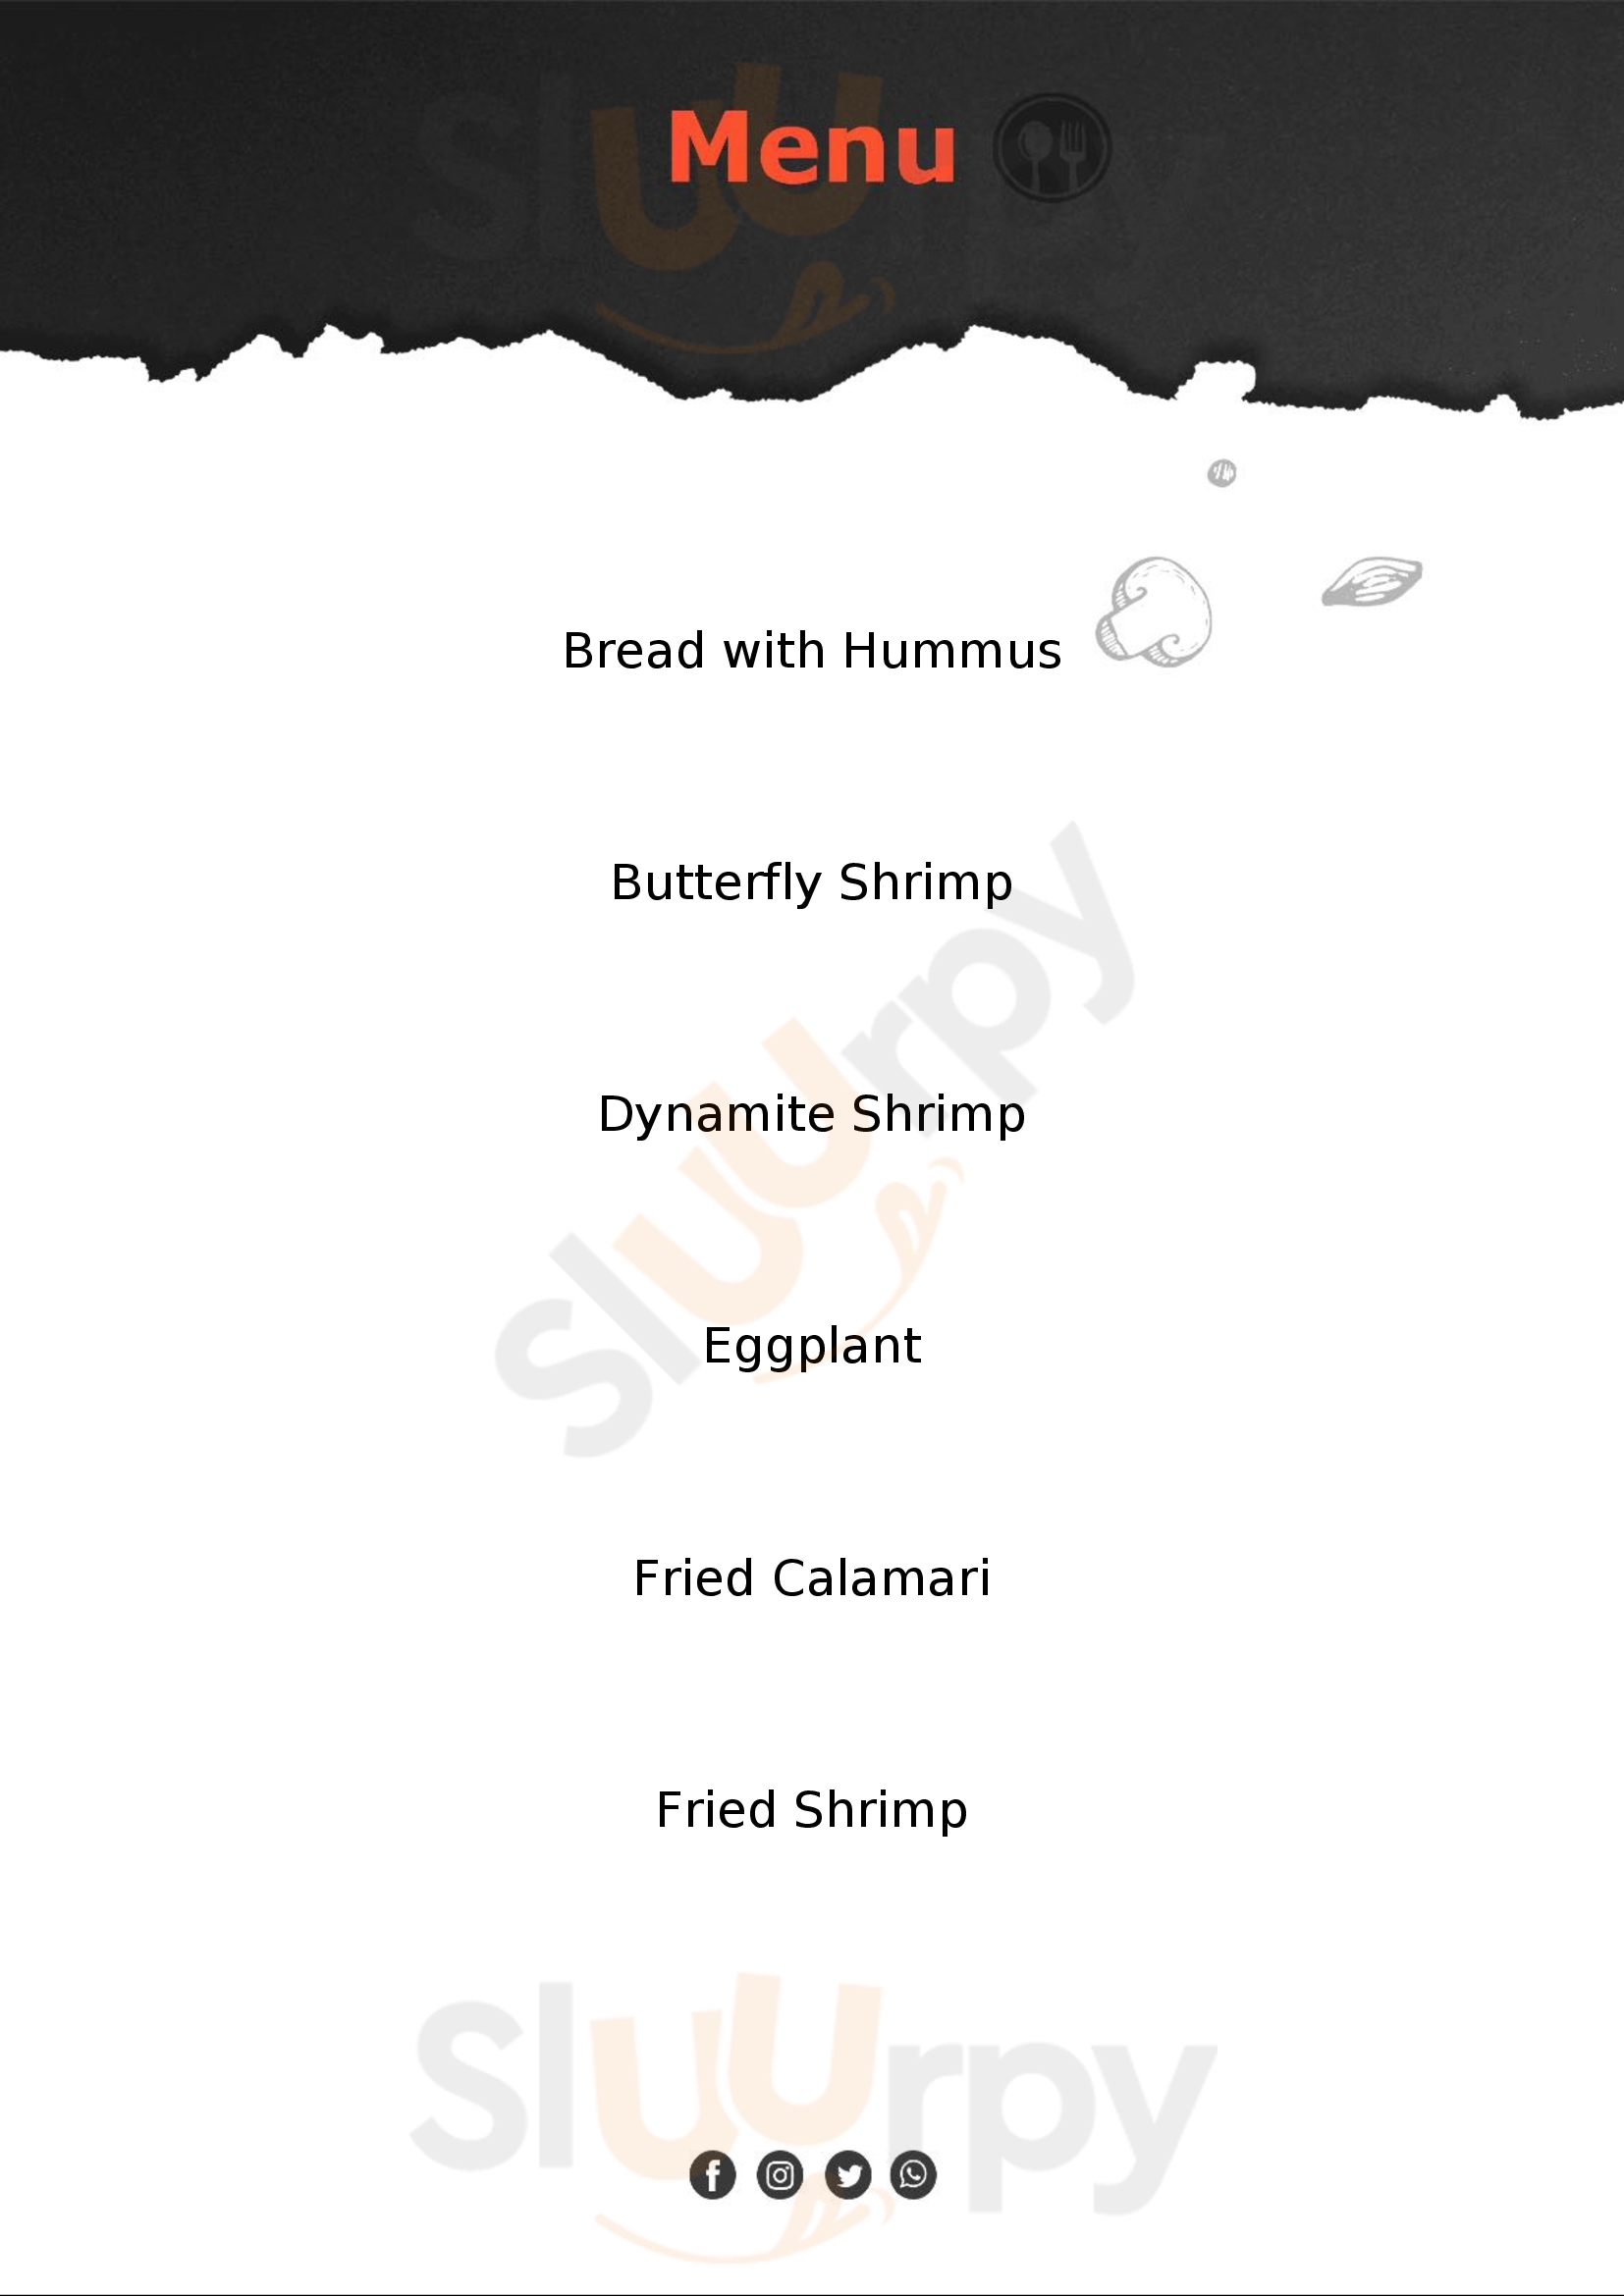 مطعم سمكاتو للمأكولات البحرية دُبي Menu - 1